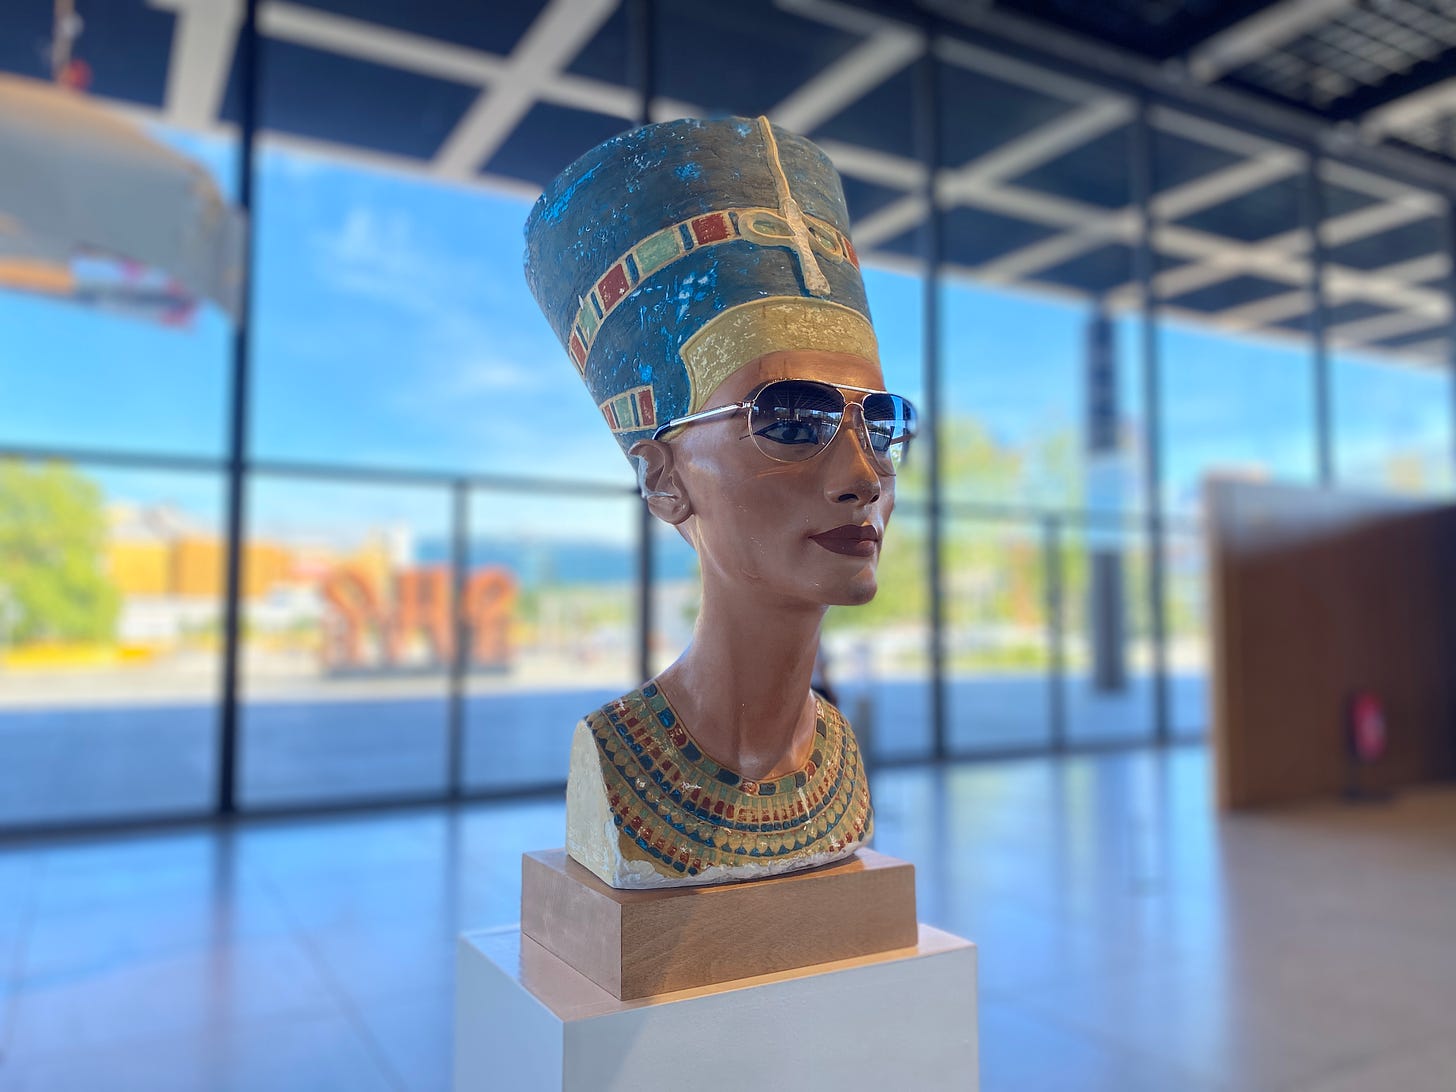 Imagem: Cópia busto Nerfetiti usando óculos aviador exposto numa sala ampla com uma parede de vidro aos fundos e céu azul.